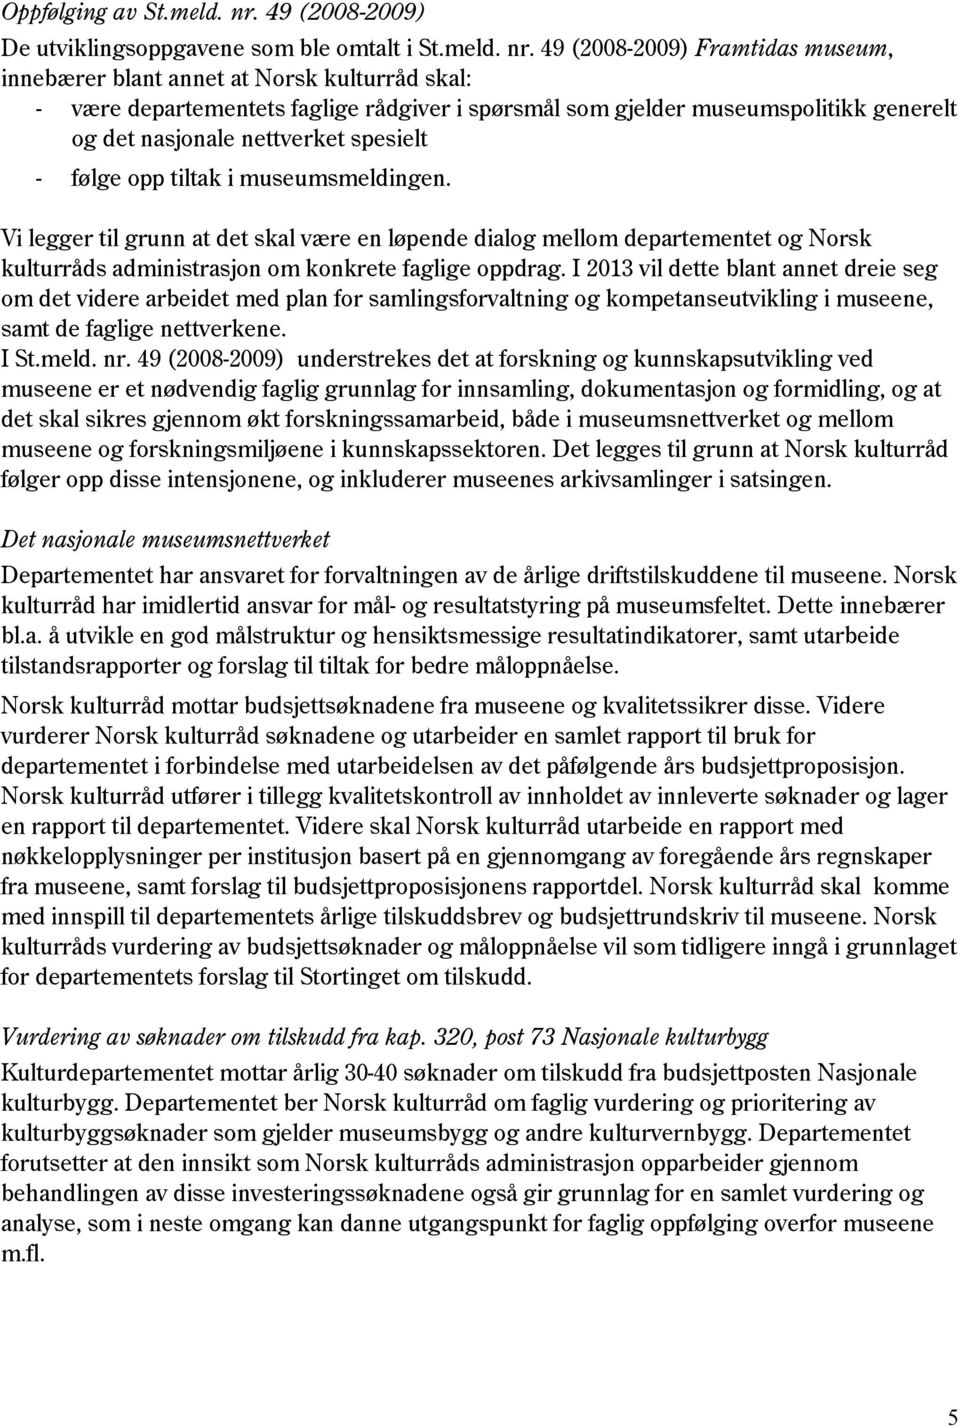 49 (2008-2009) Framtidas museum, innebærer blant annet at Norsk kulturråd skal: - være departementets faglige rådgiver i spørsmål som gjelder museumspolitikk generelt og det nasjonale nettverket